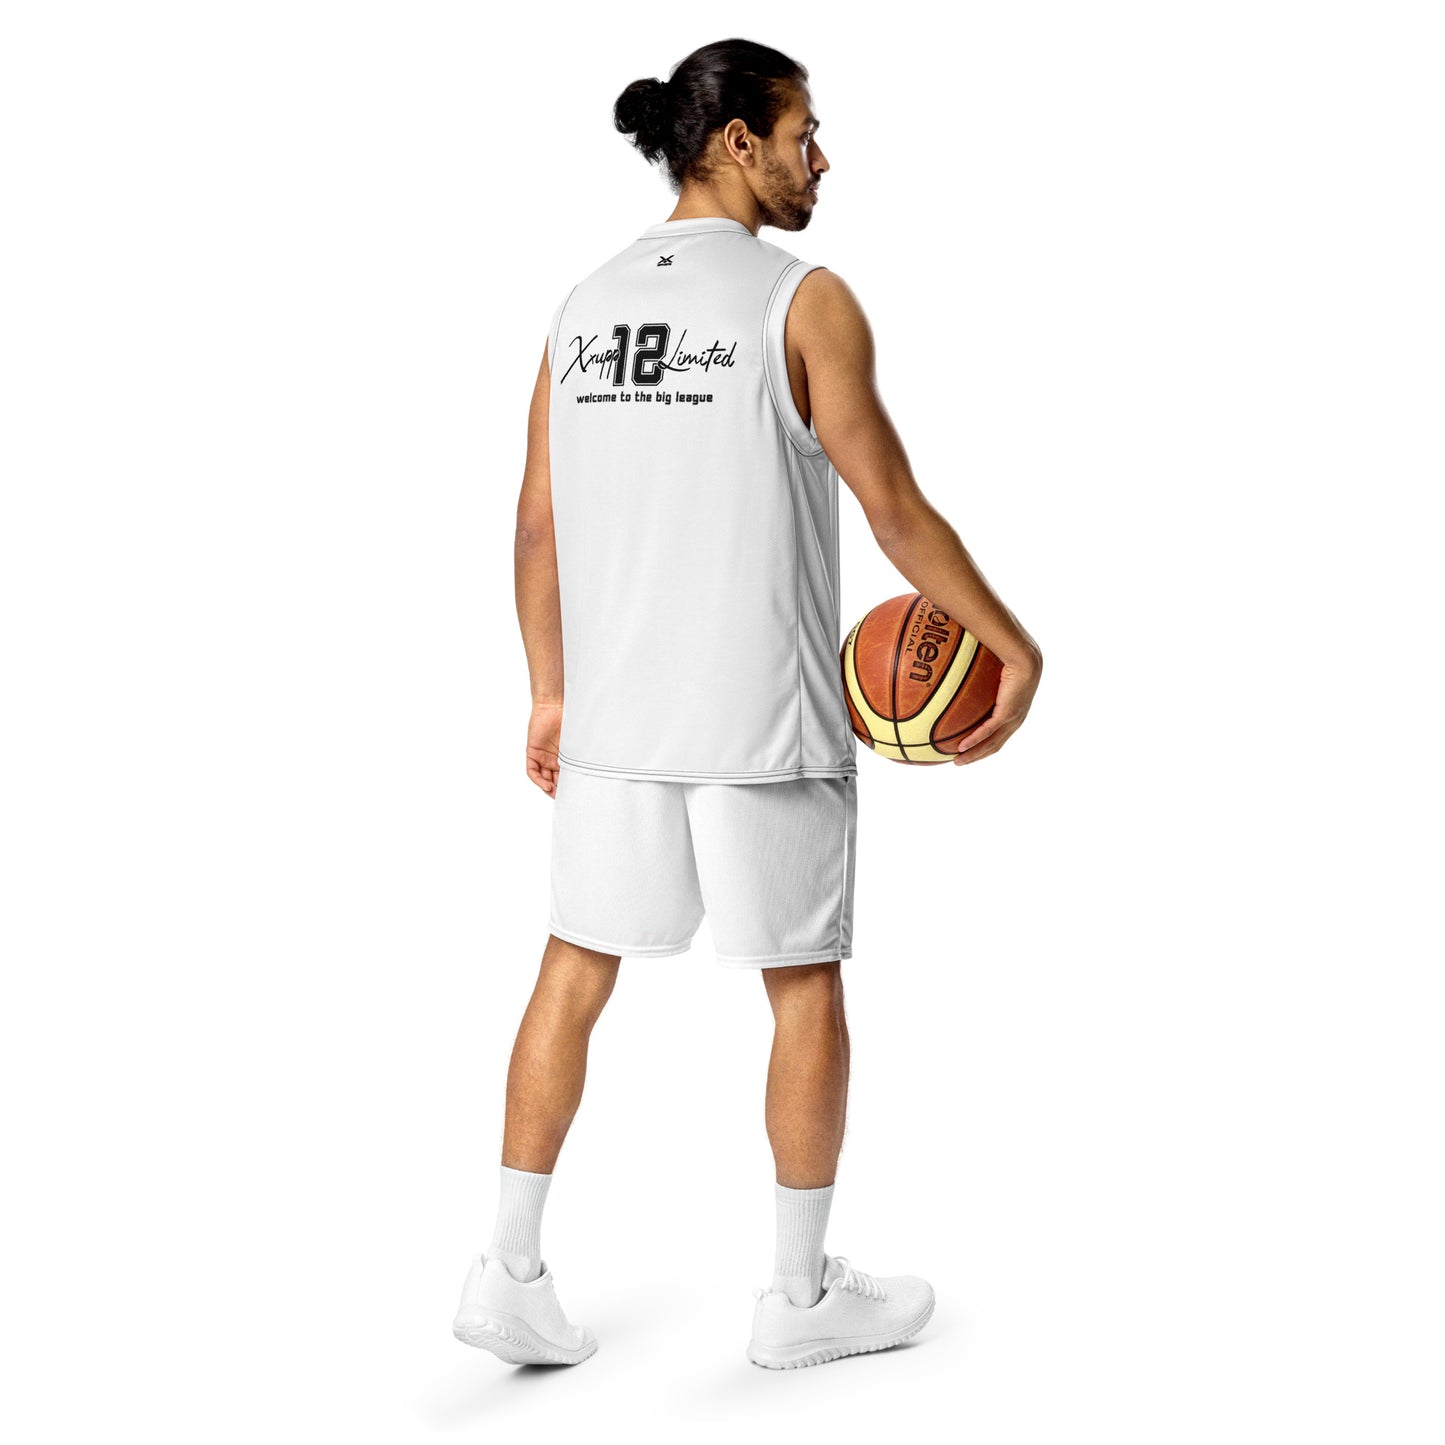 XXUPP unisex basketball jersey